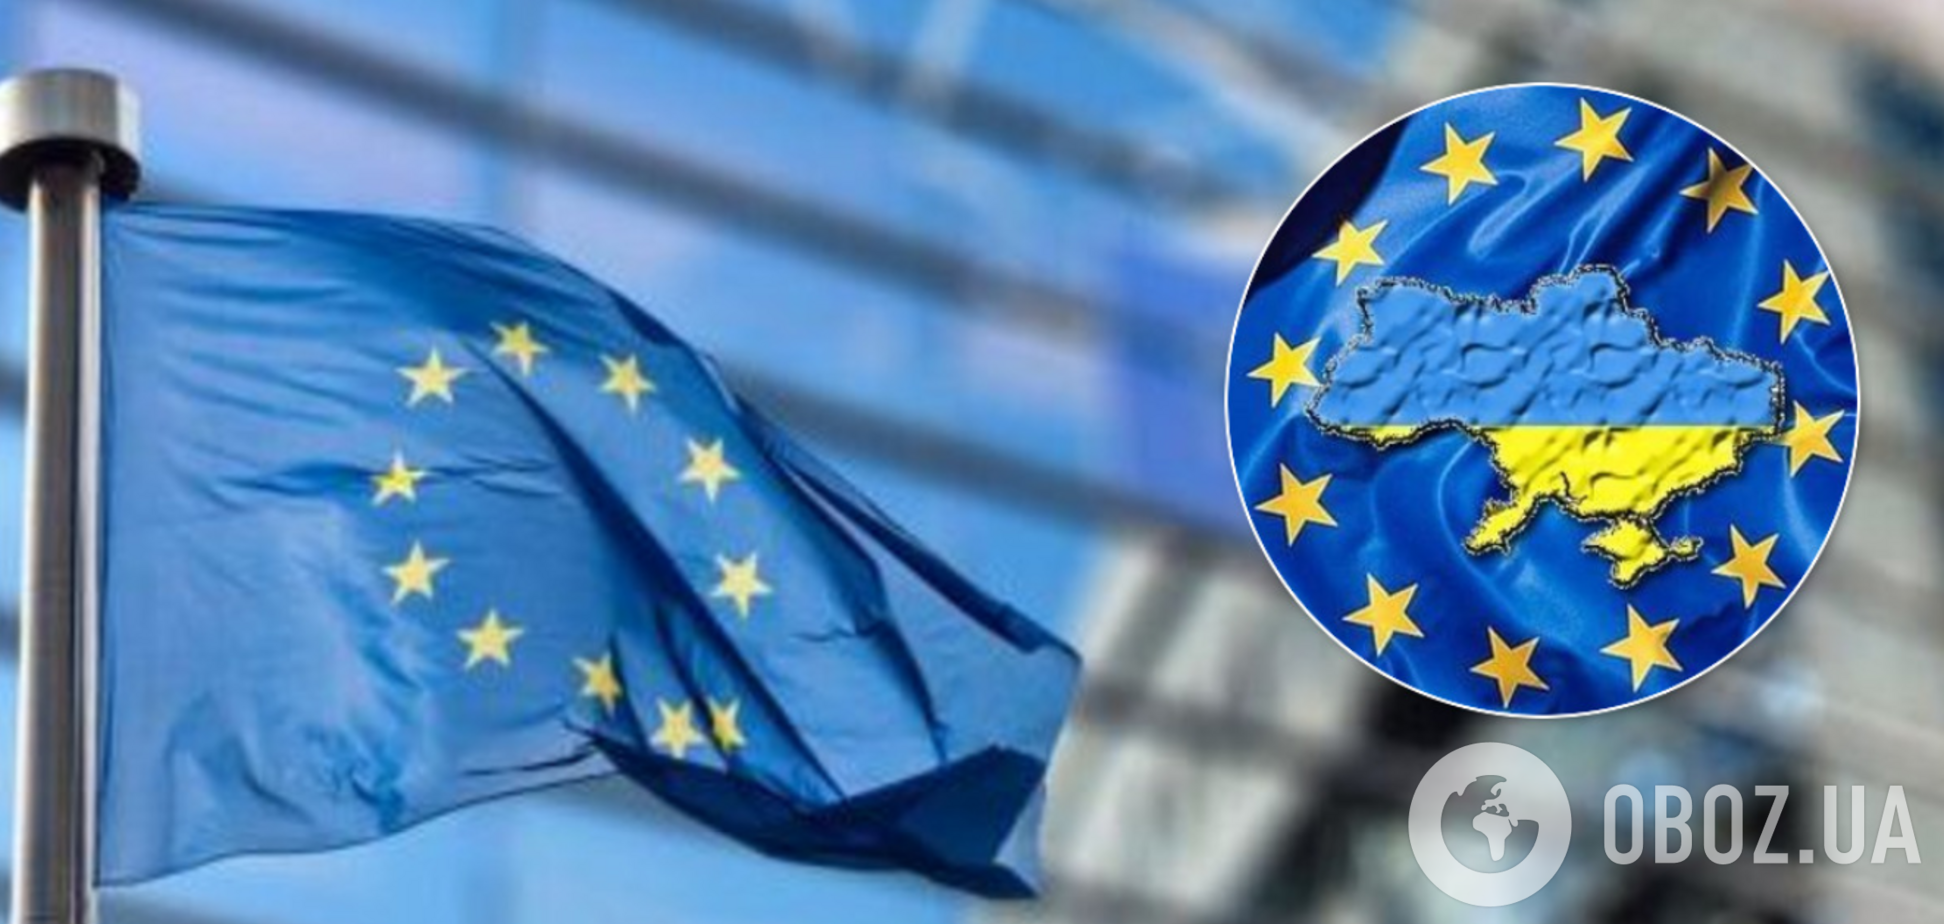 ЄС закликали змінити політику щодо України: заговорили про членство